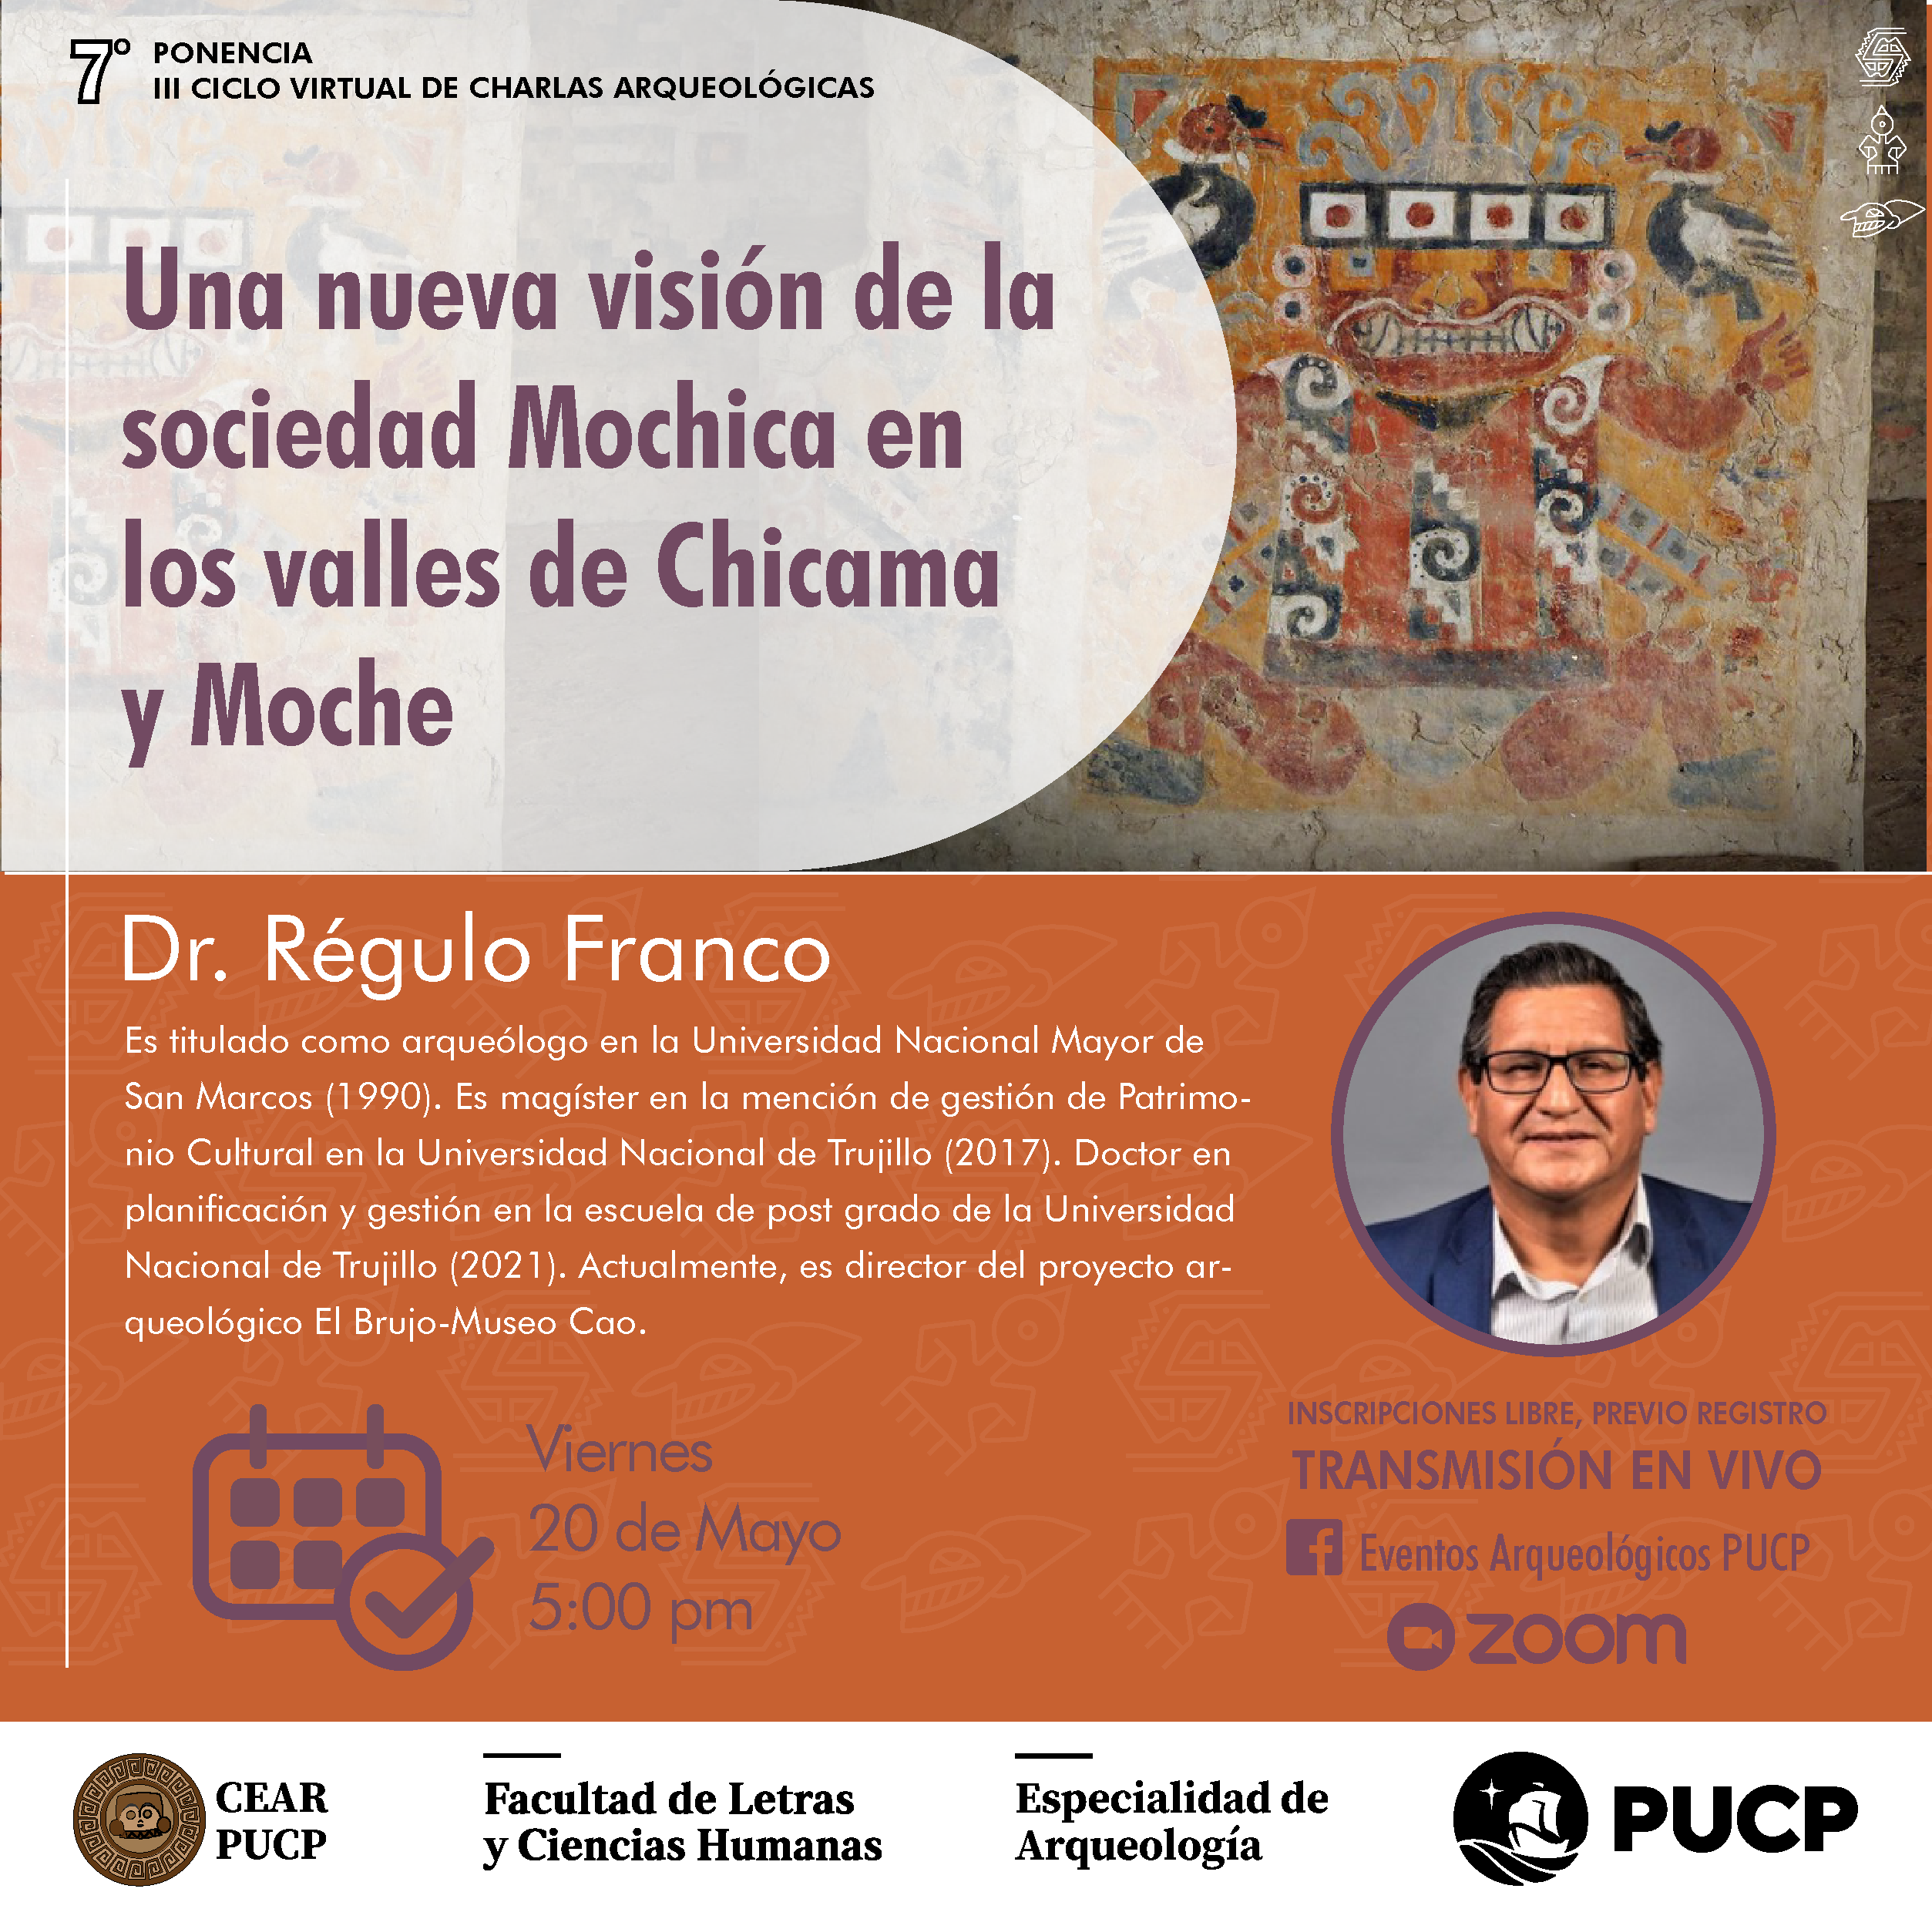 Una nueva visión de la sociedad Mochica en los valles de Chicama y Moche